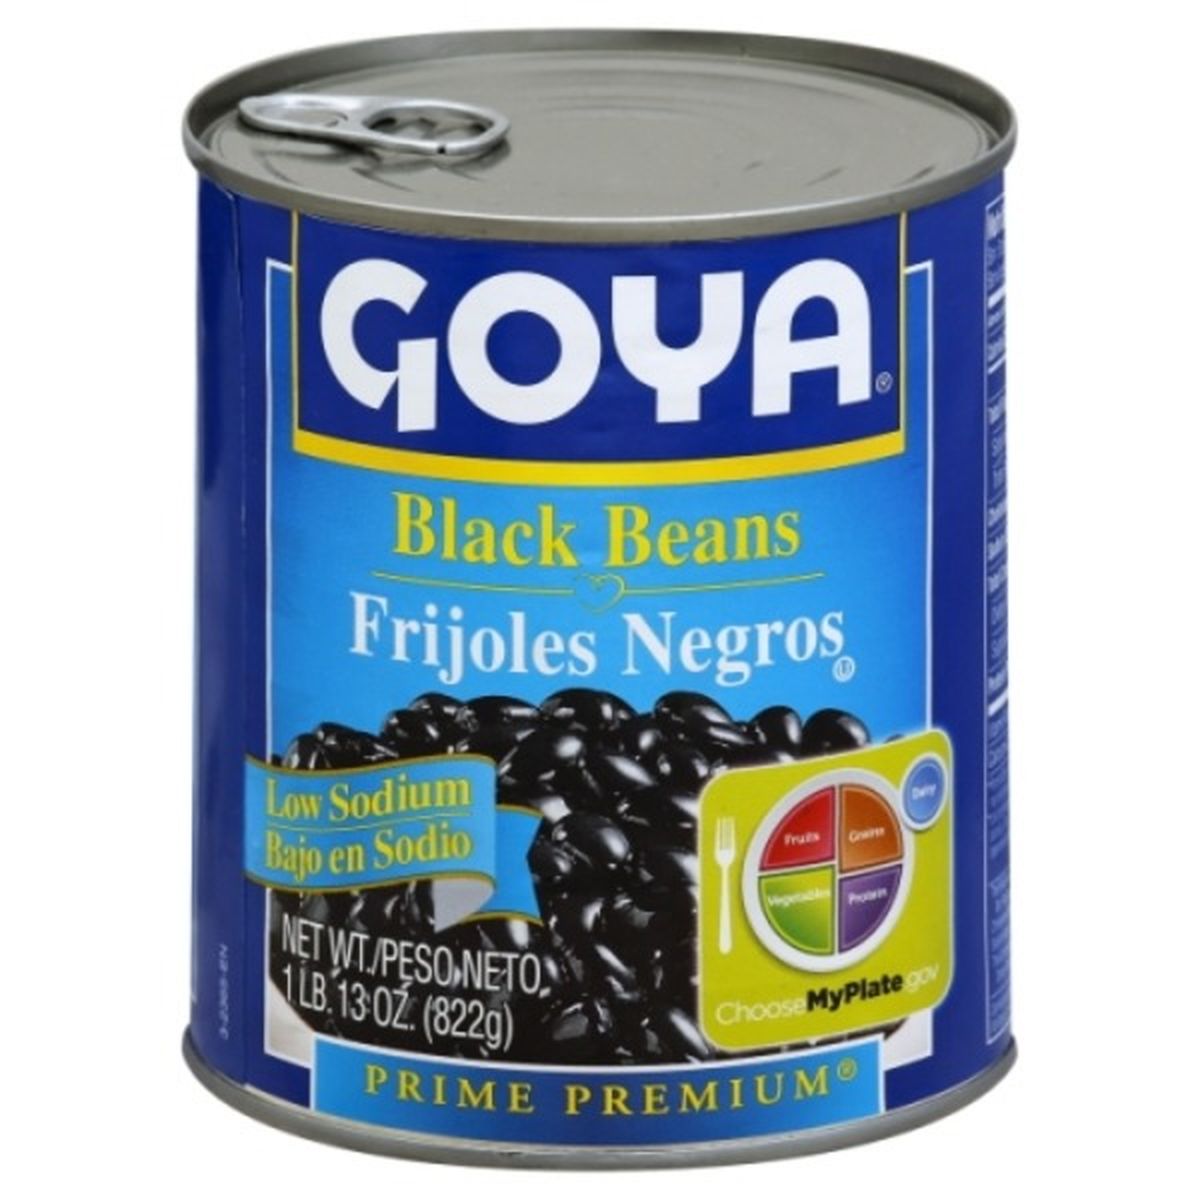 Calories in Goya Prime Premium Black Beans